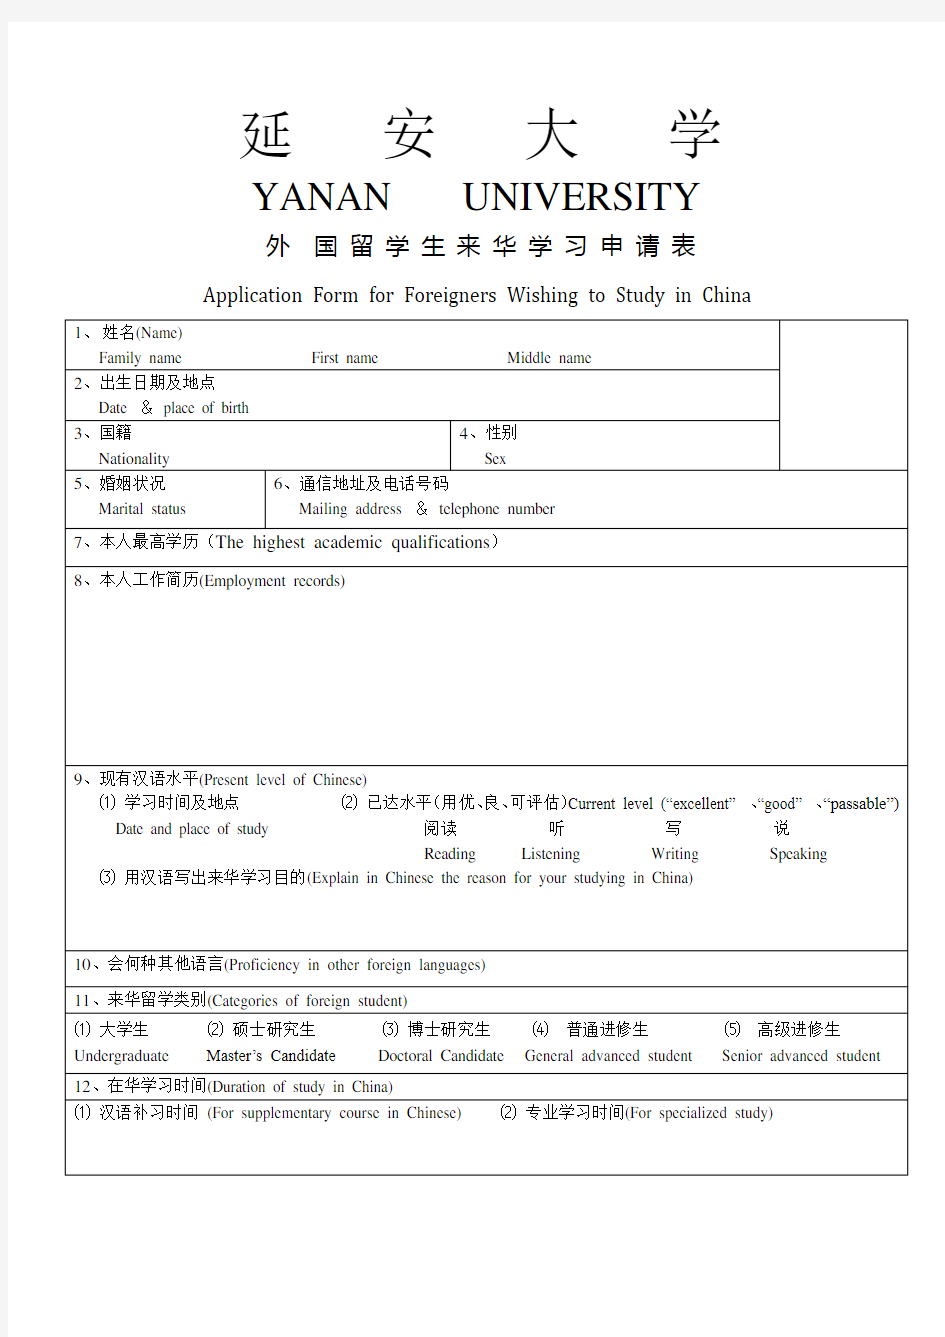 延安大学外国留学生来华学习申请表